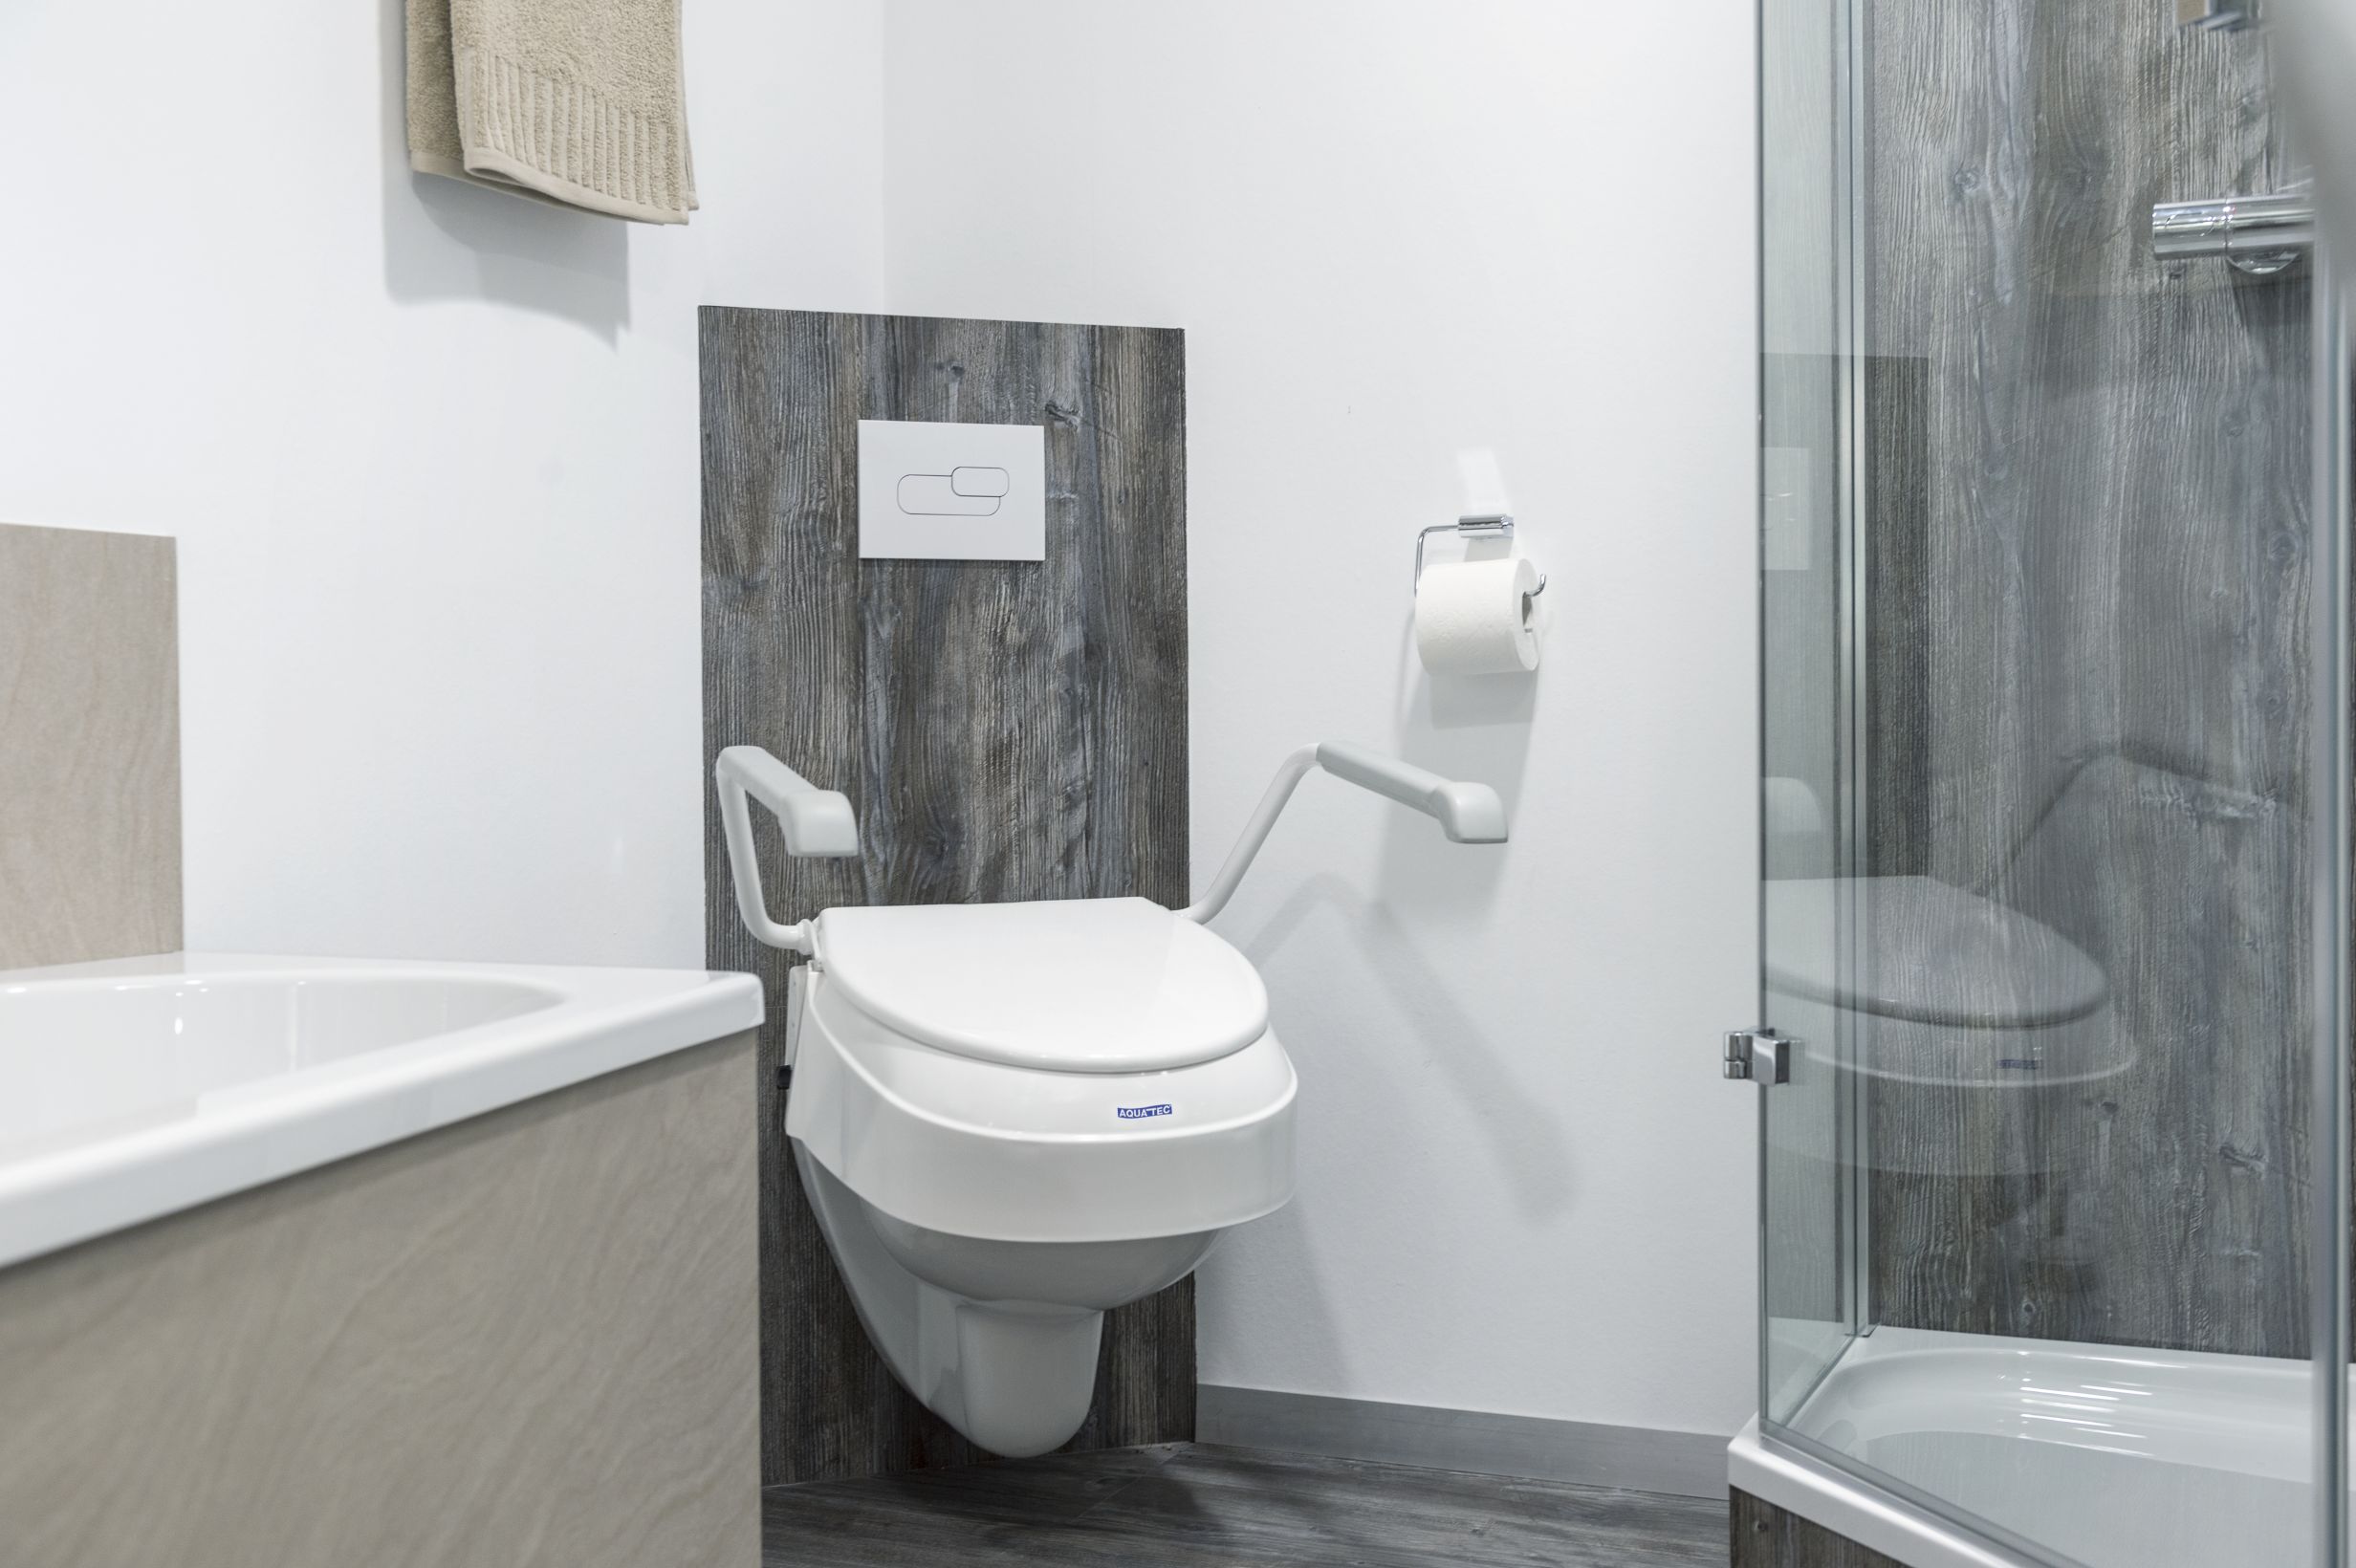 Accessoires de toilettes adaptées aux usagers handicapés pour les aider avec soin